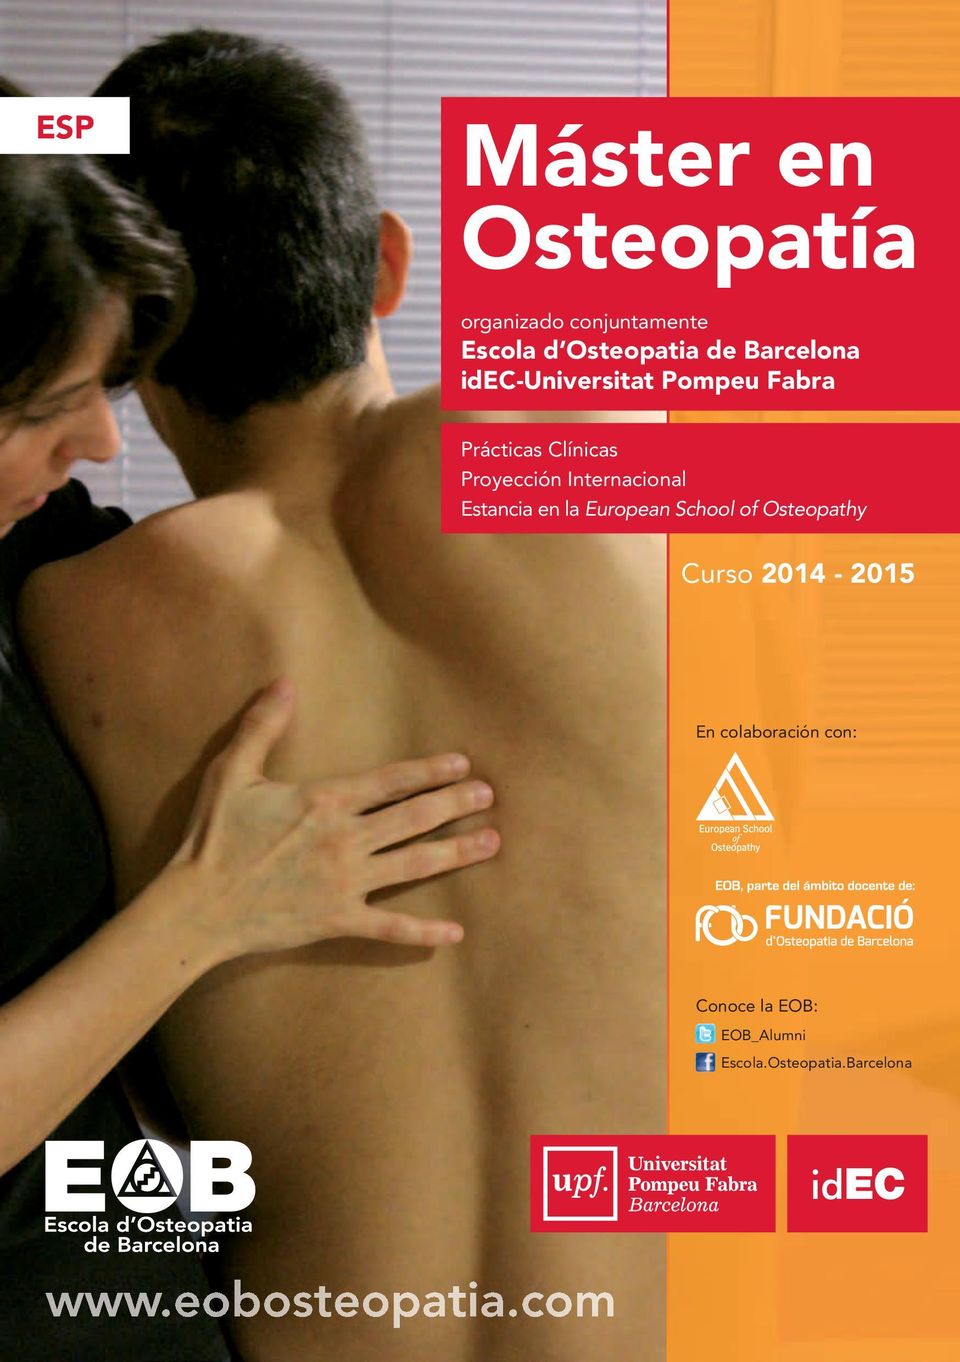 Internacional Estancia en la European School of Osteopathy Curso